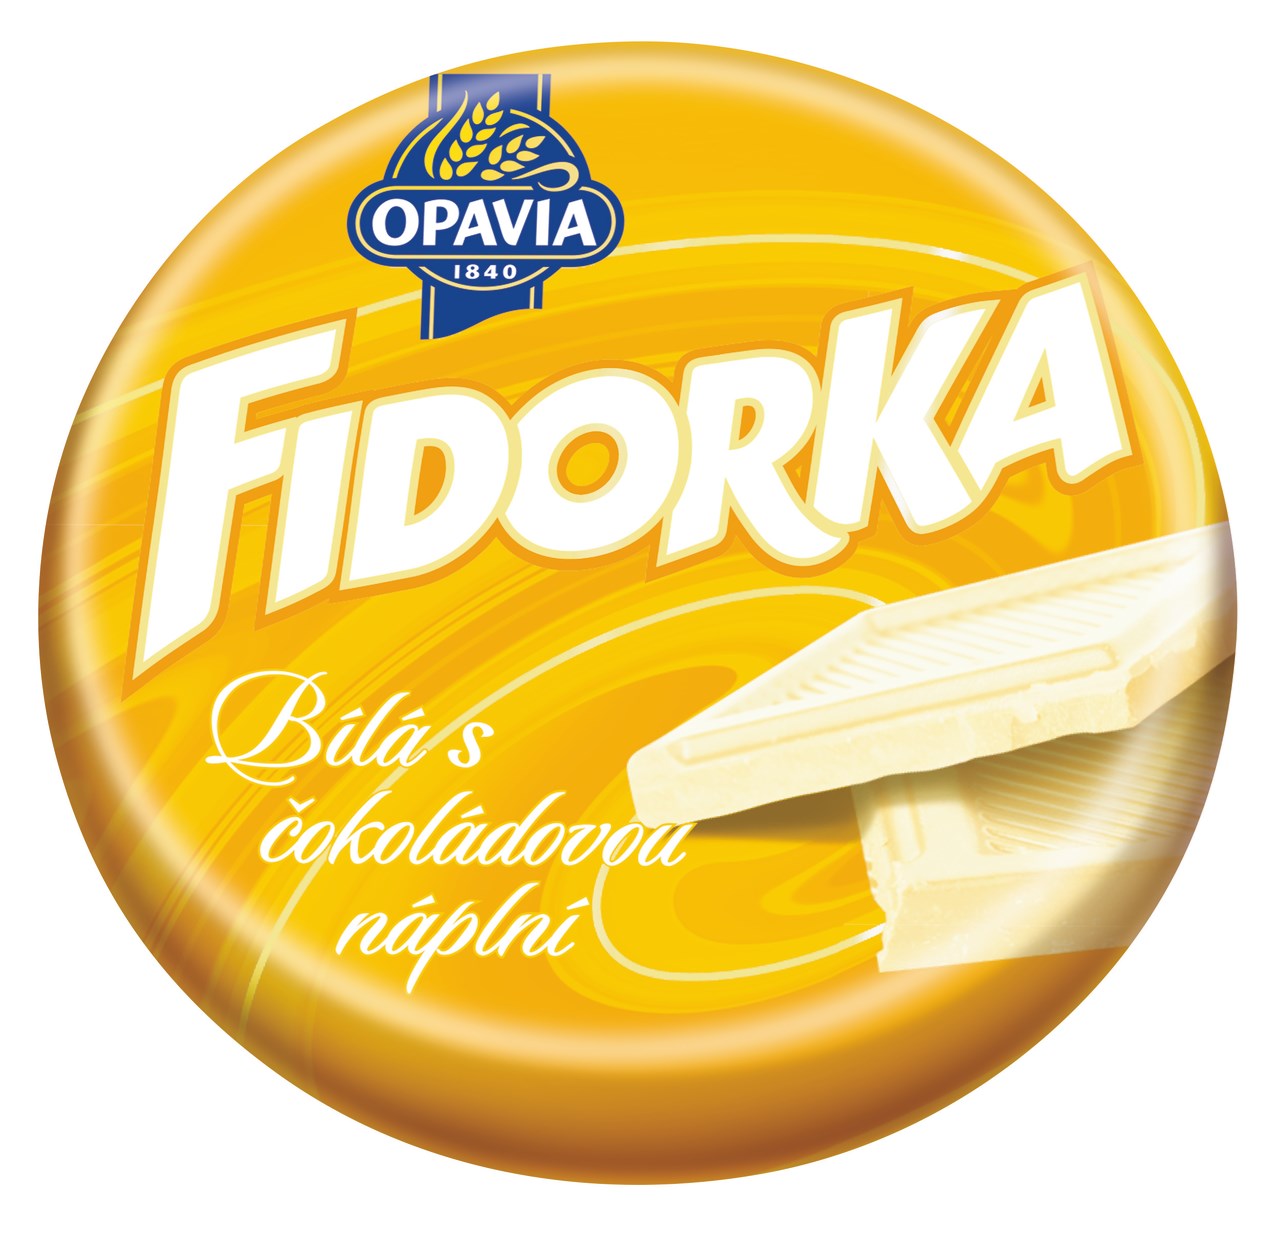 Opavia Fidorka 30g